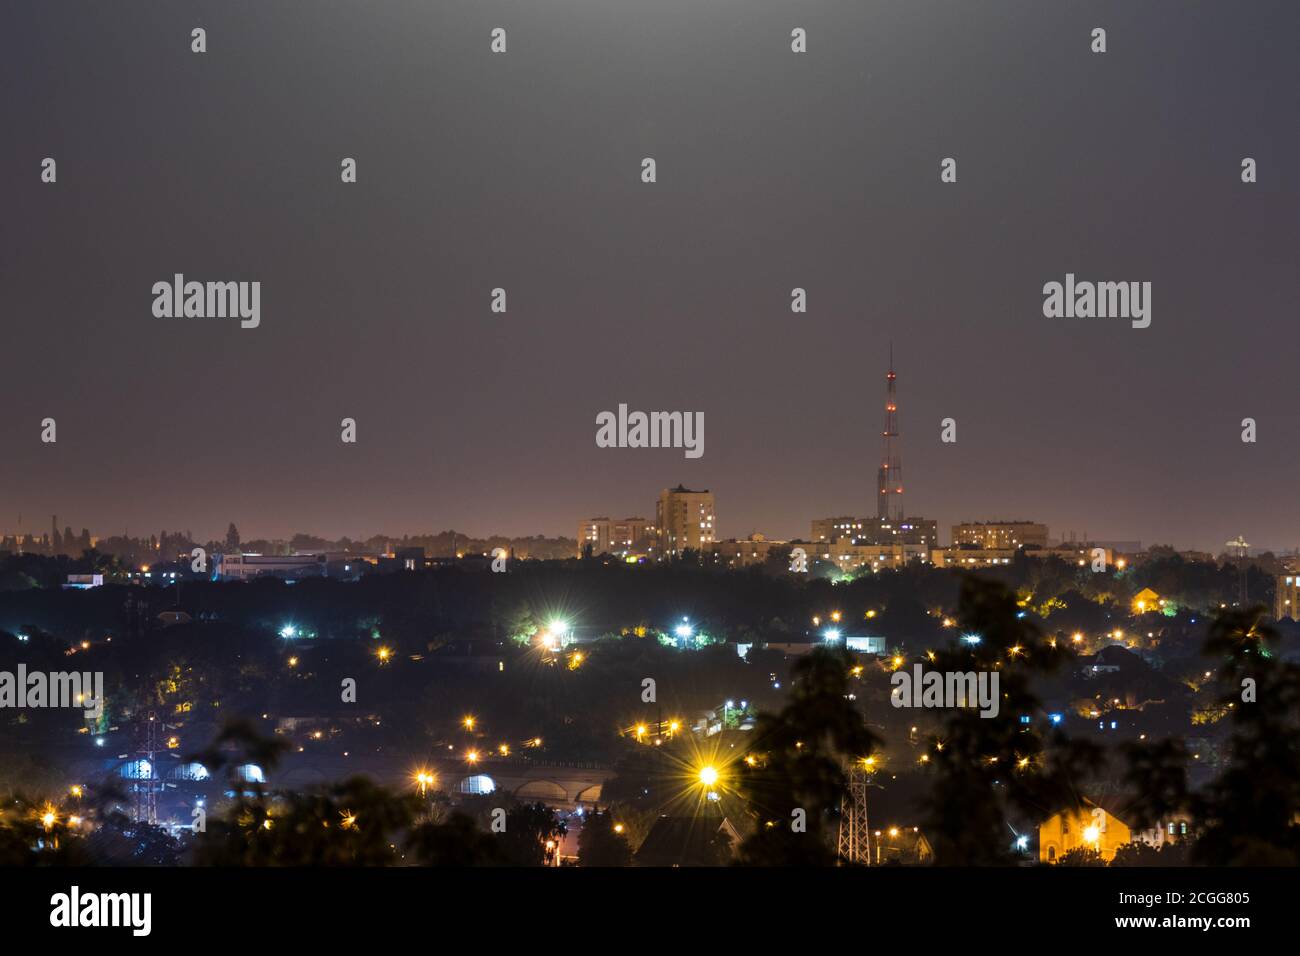 Nachts Stadtlichter Panorama. Große Stadt mit hellem Mondlicht aufgehellt. Bunte romantische klare Himmel Nacht Blick auf Charkiw, Ukraine Stockfoto